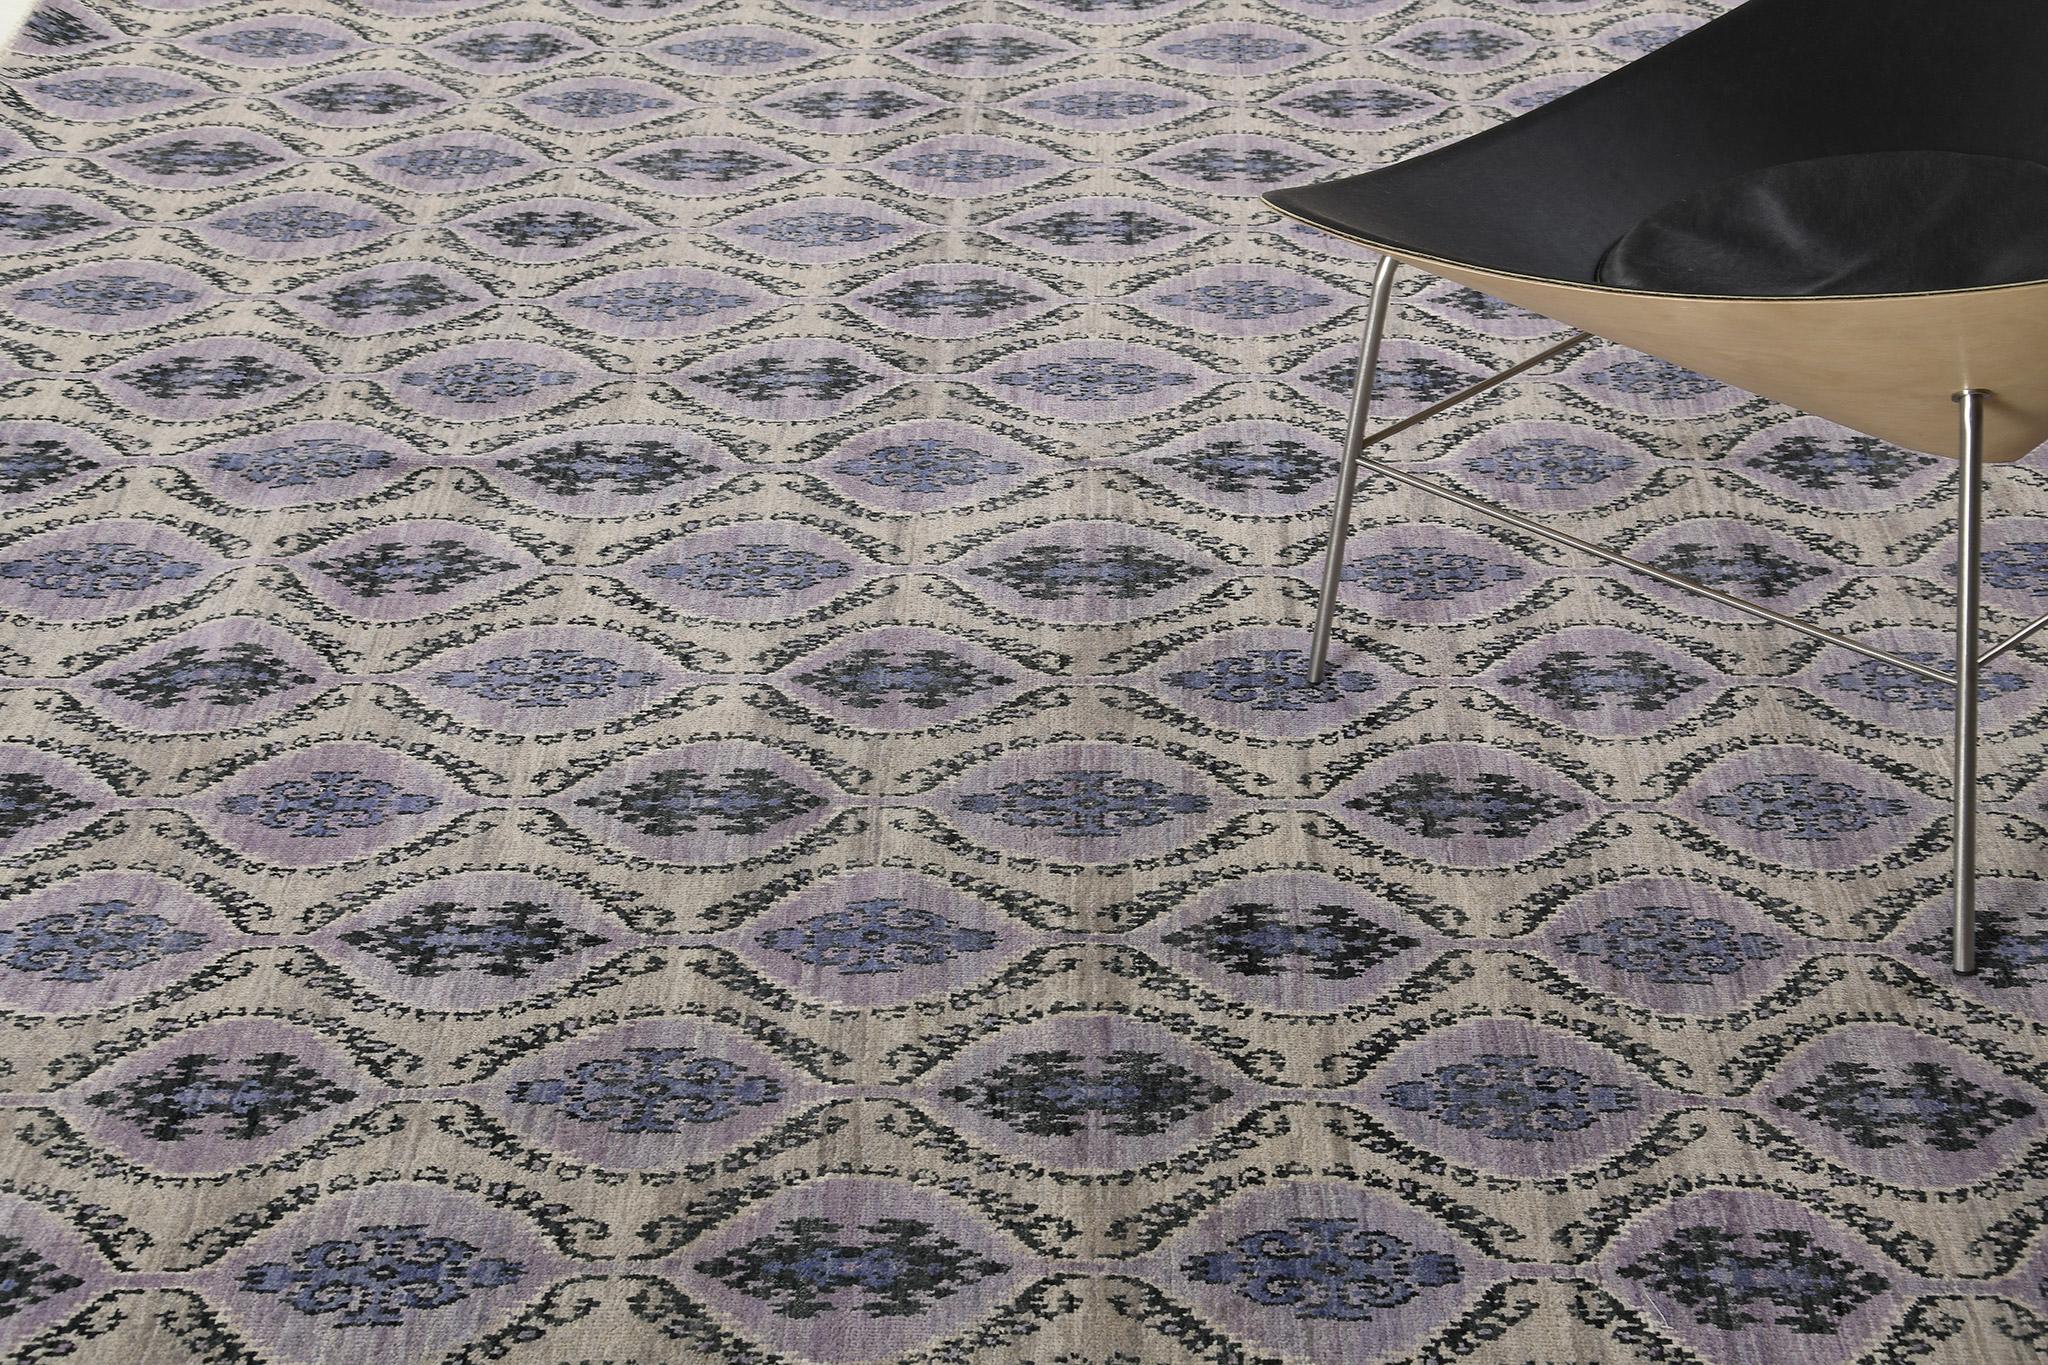 Dantelle ist ein Übergangsdesign, das traditionelle Rautenmotive mit einem modernen Gittermuster verbindet. Schöne Blau- und Grautöne ergänzen sich zu einem zeitgemäßen Teppich. Dieses Stück wird jeden Raum aufwerten und ihm Charakter